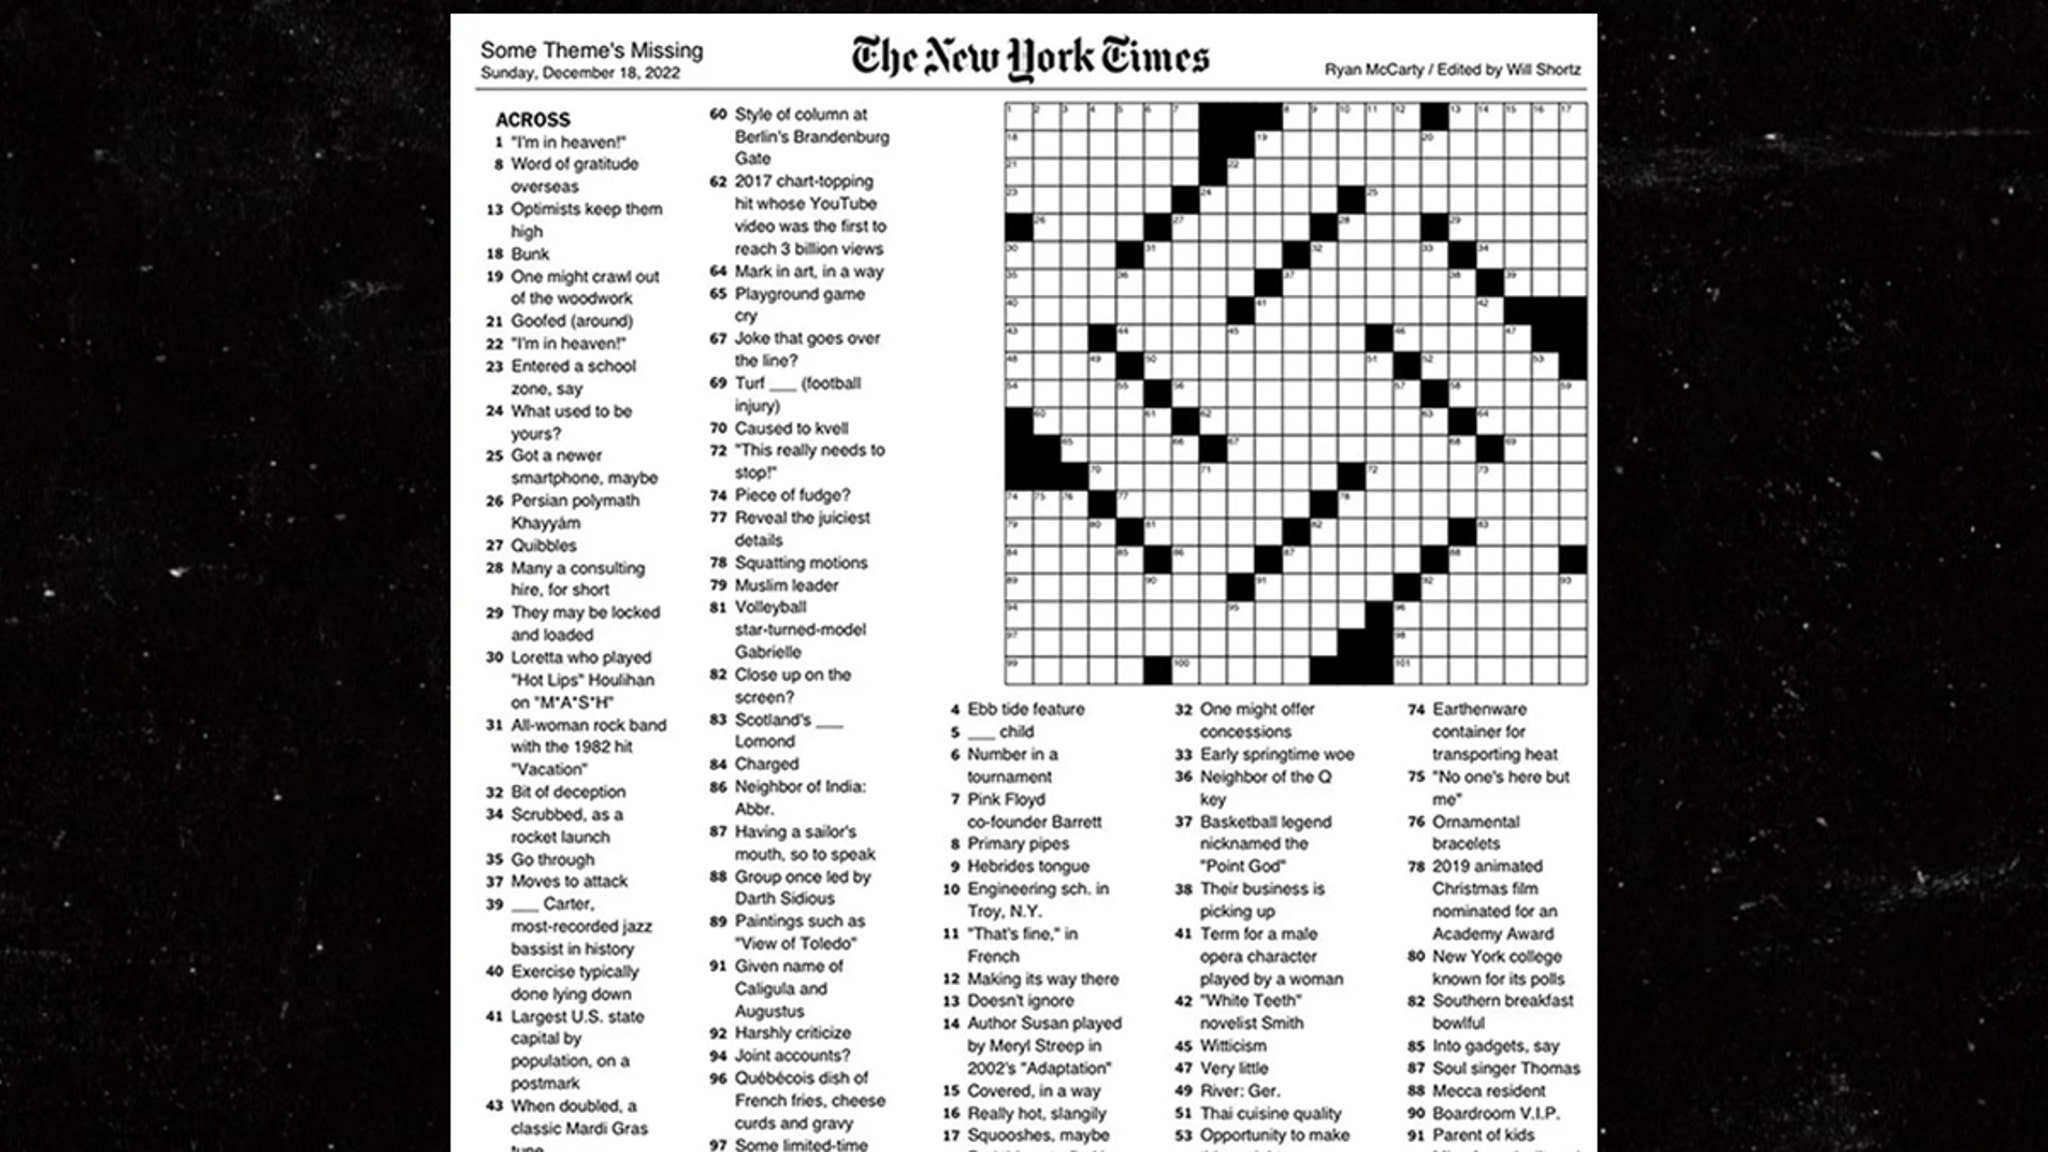 The New York Times отстала от кроссворда в форме свастики во время Хануки.